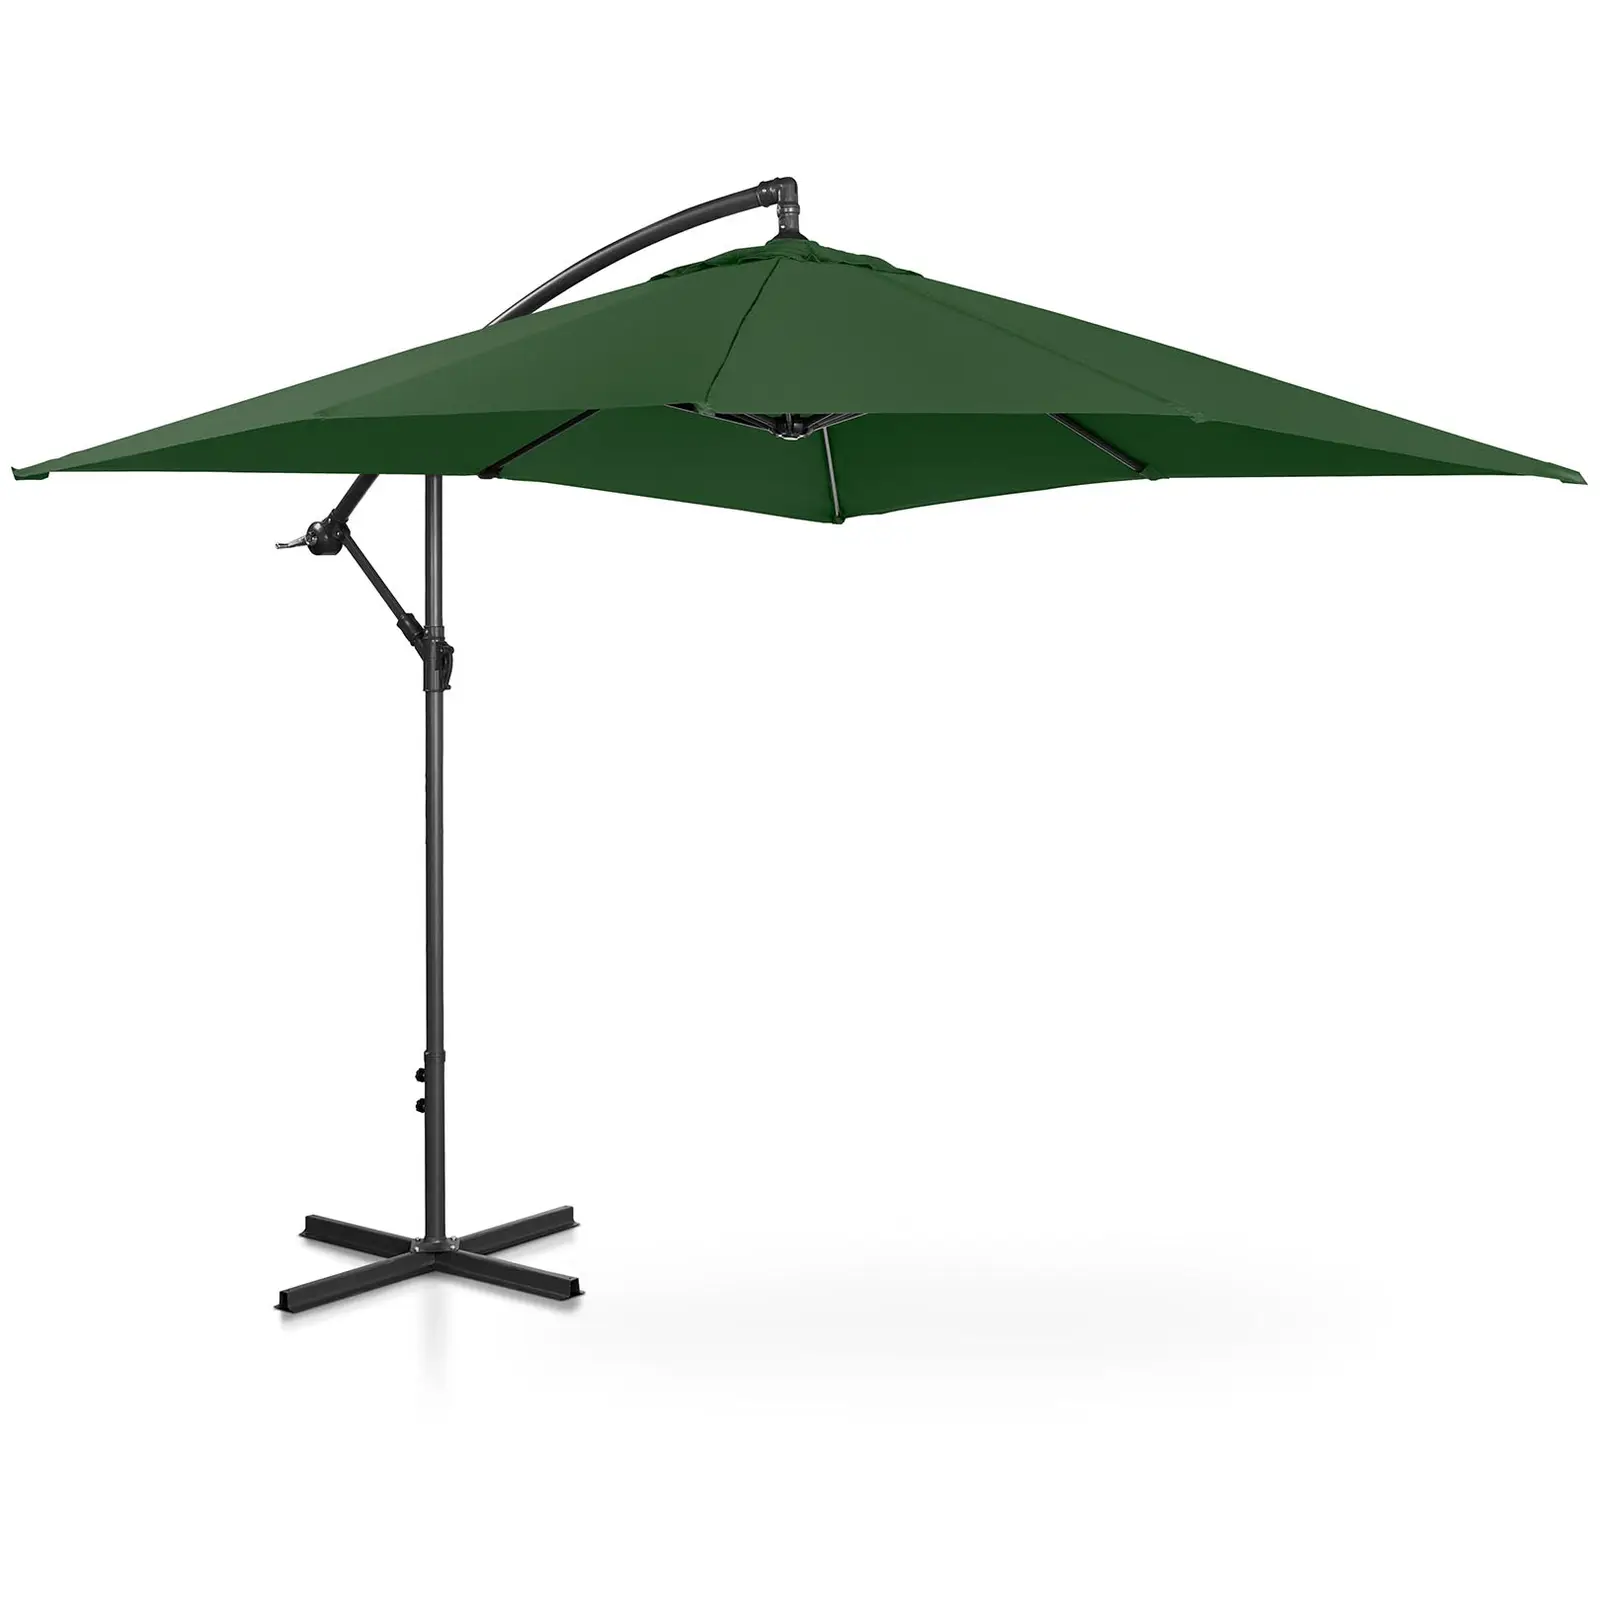 Kakkoslaatu Aurinkovarjo - vihreä - suorakulmainen - 250 x 250 cm - kallistettava